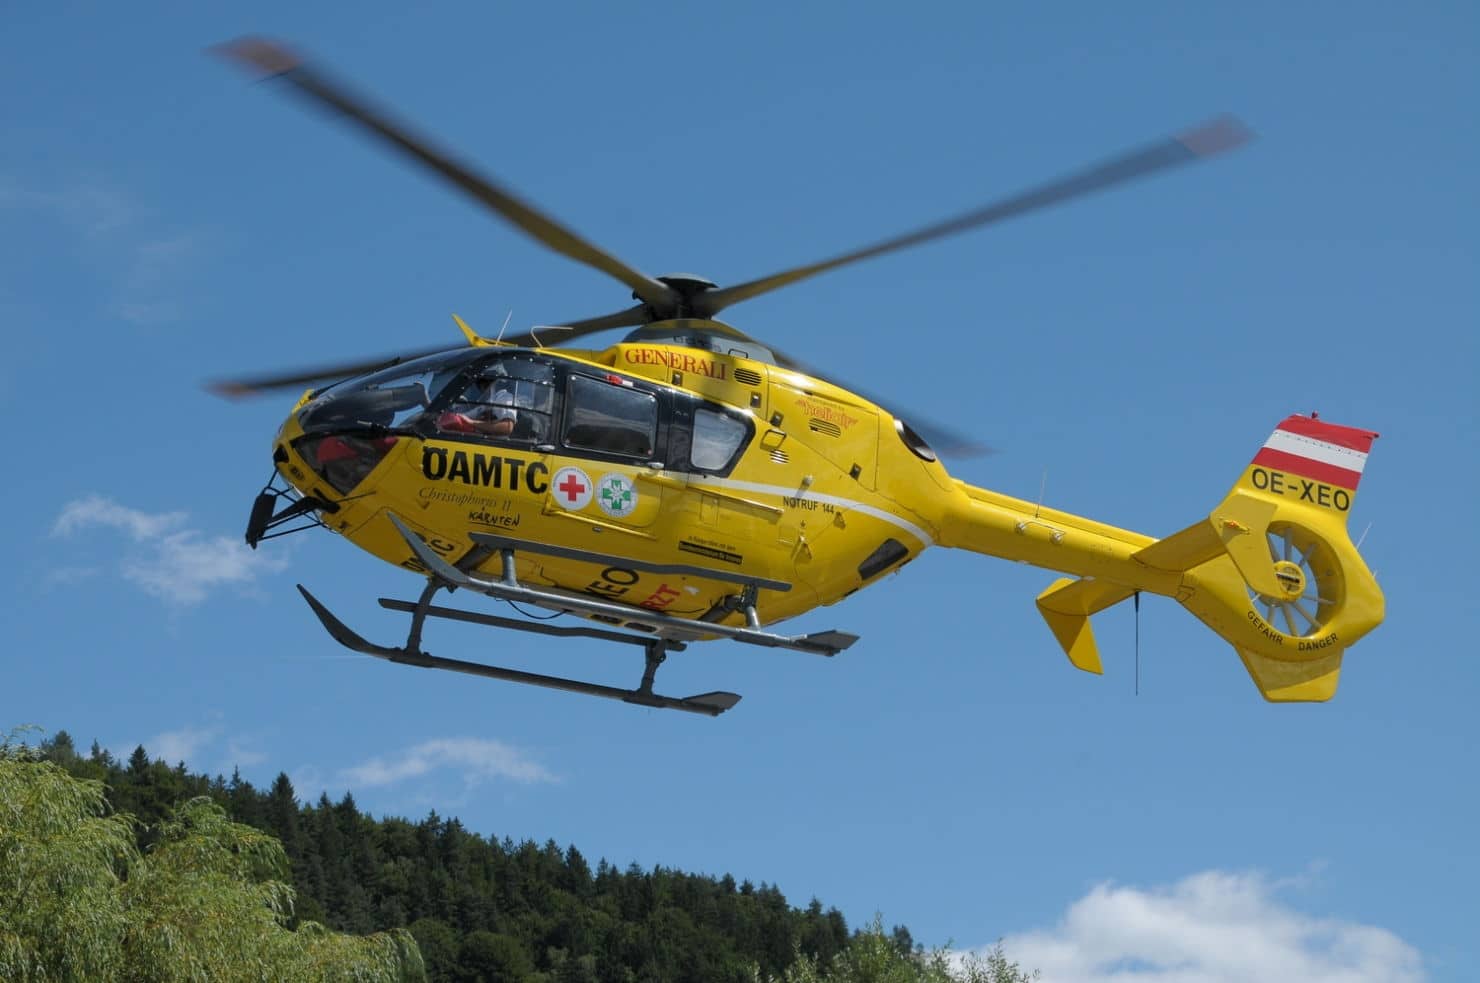 Die 72-Jährige wurde mit dem Rettungshubschrauber C 11, der Enkelsohn mit der Rettung in das Klinikum Klagenfurt gebracht.